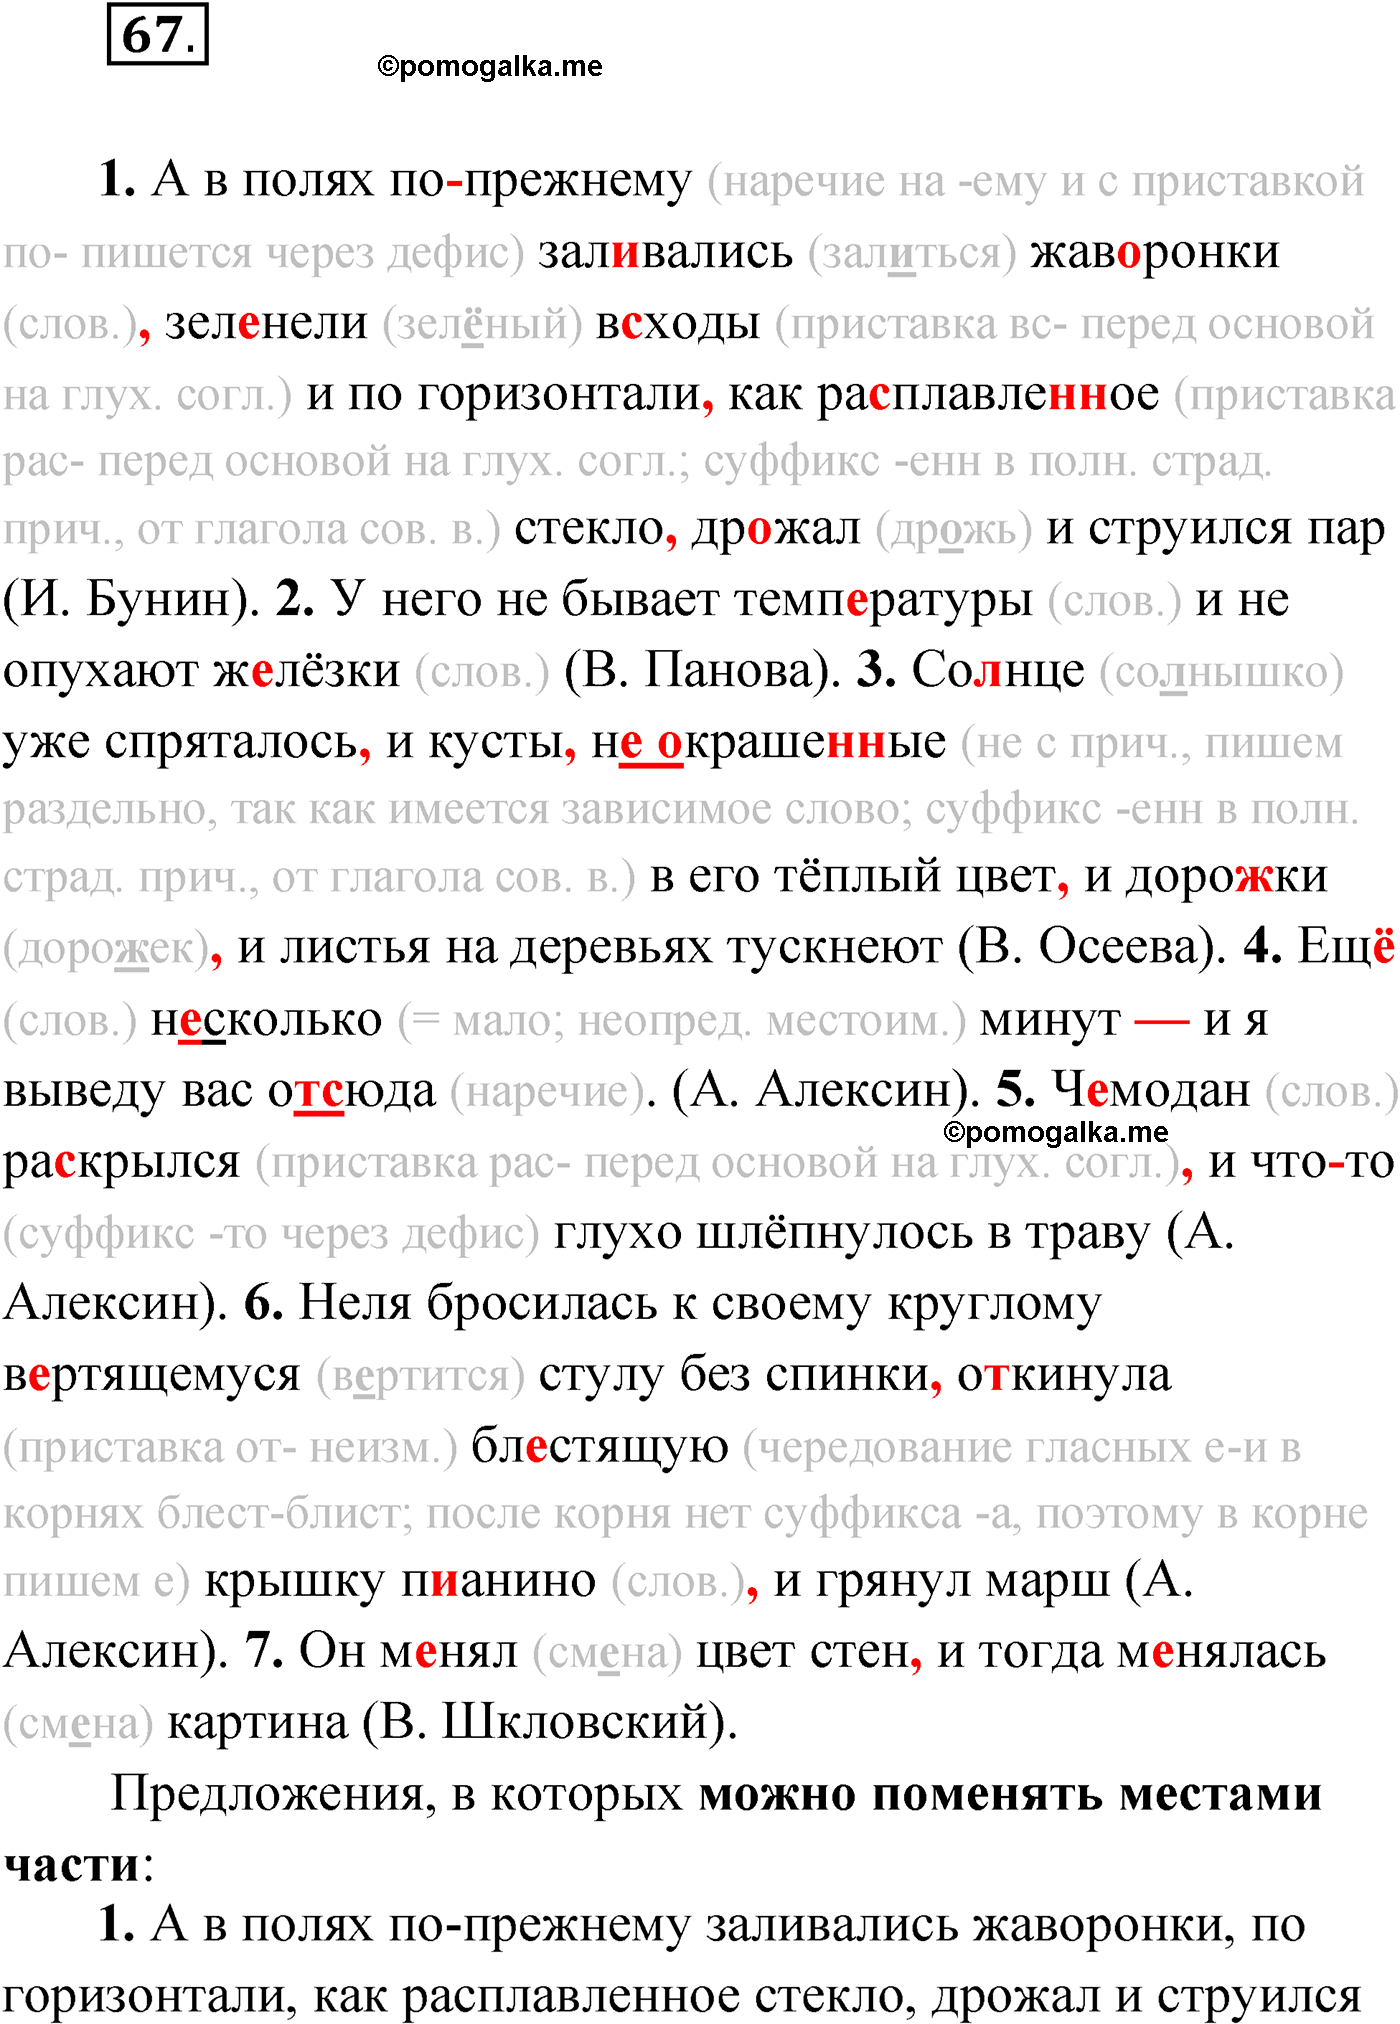 упражнение №67 русский язык 9 класс Мурина 2019 год